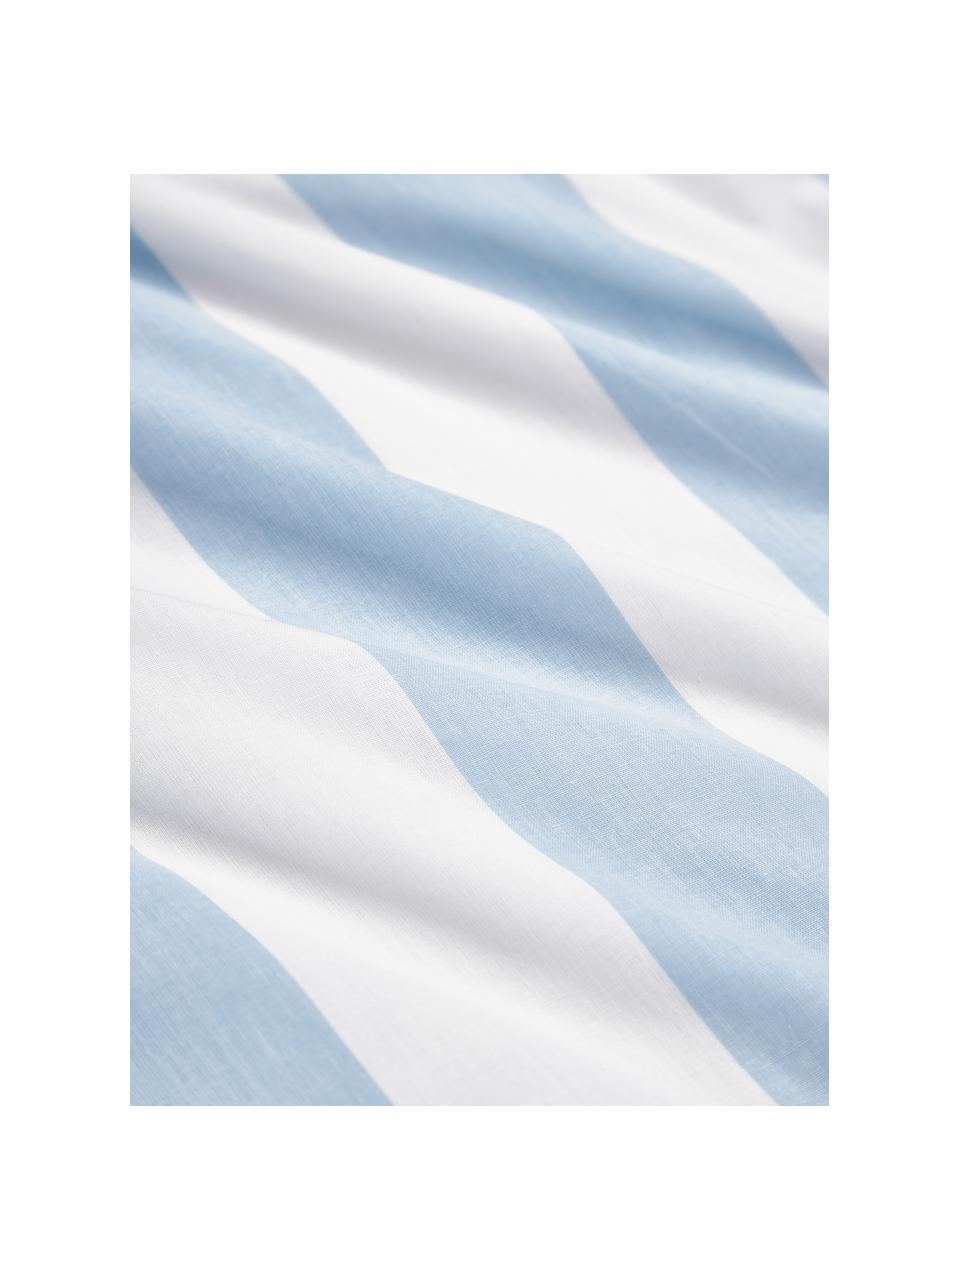 Dwustronna poszwa na kołdrę z bawełny Lorena, Jasny niebieski, biały, S 200 x D 200 cm